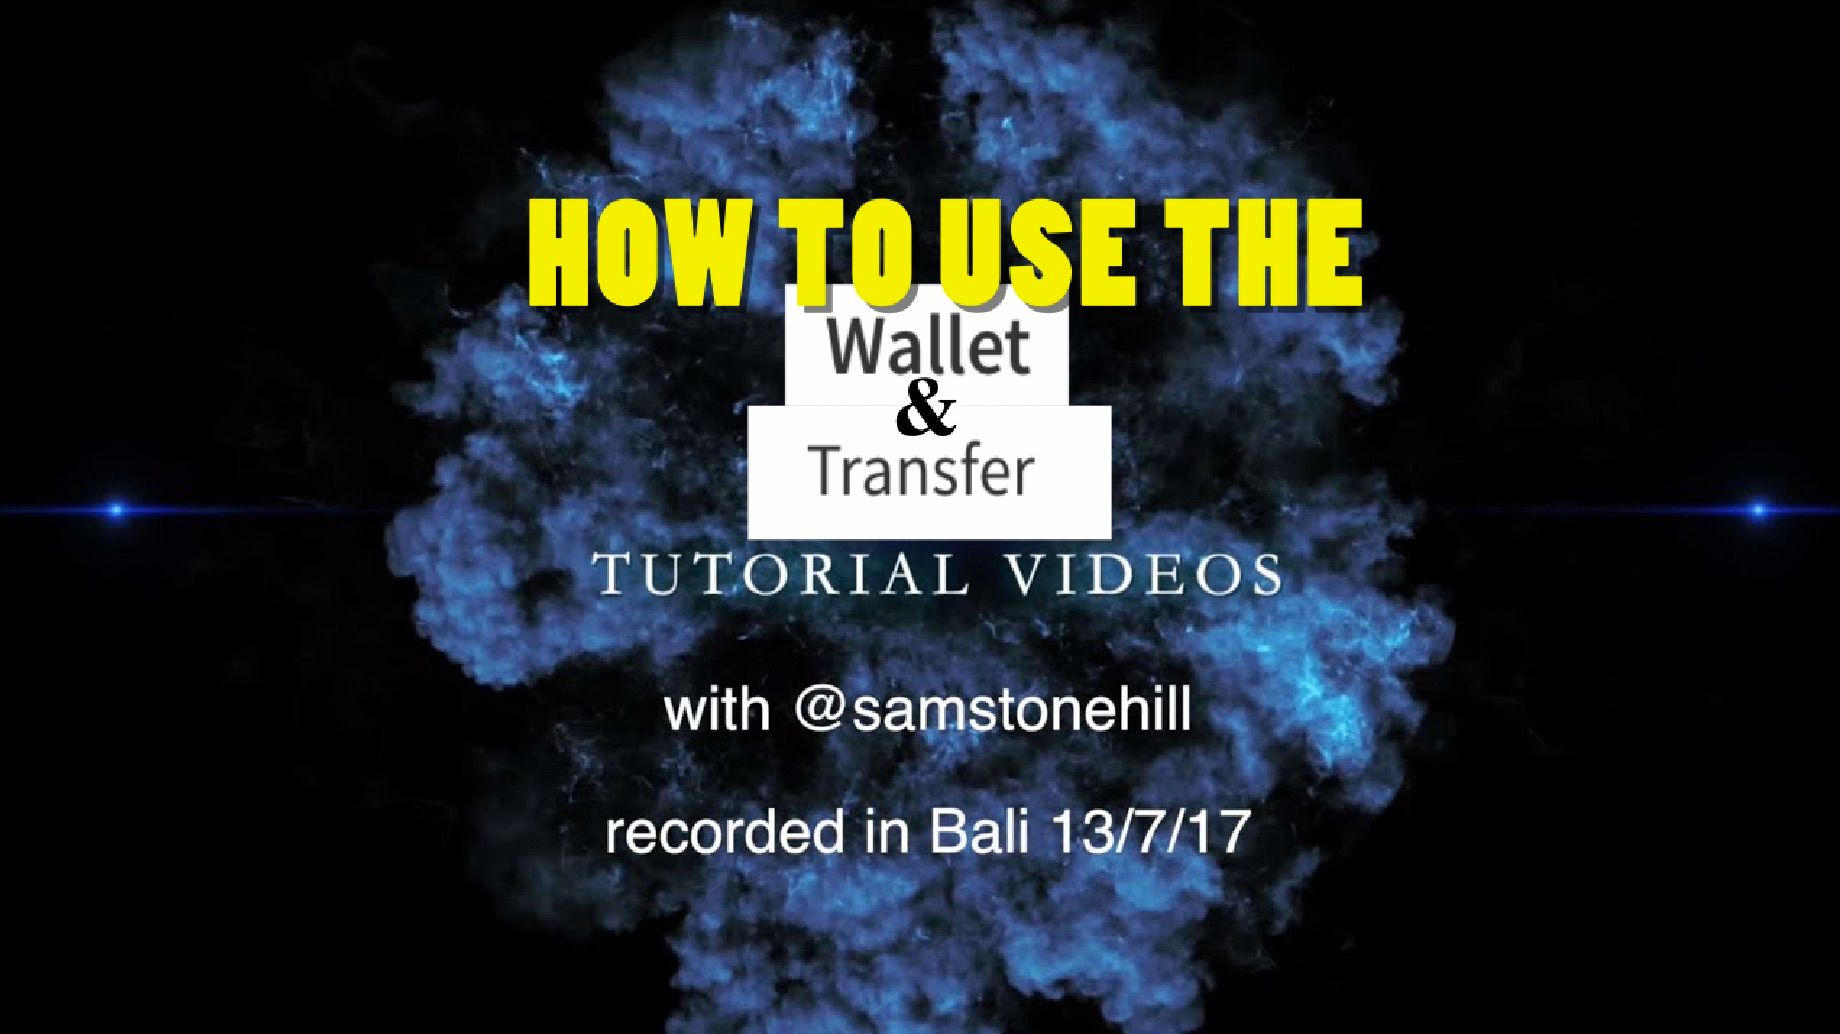 Wallet & transfer.jpg